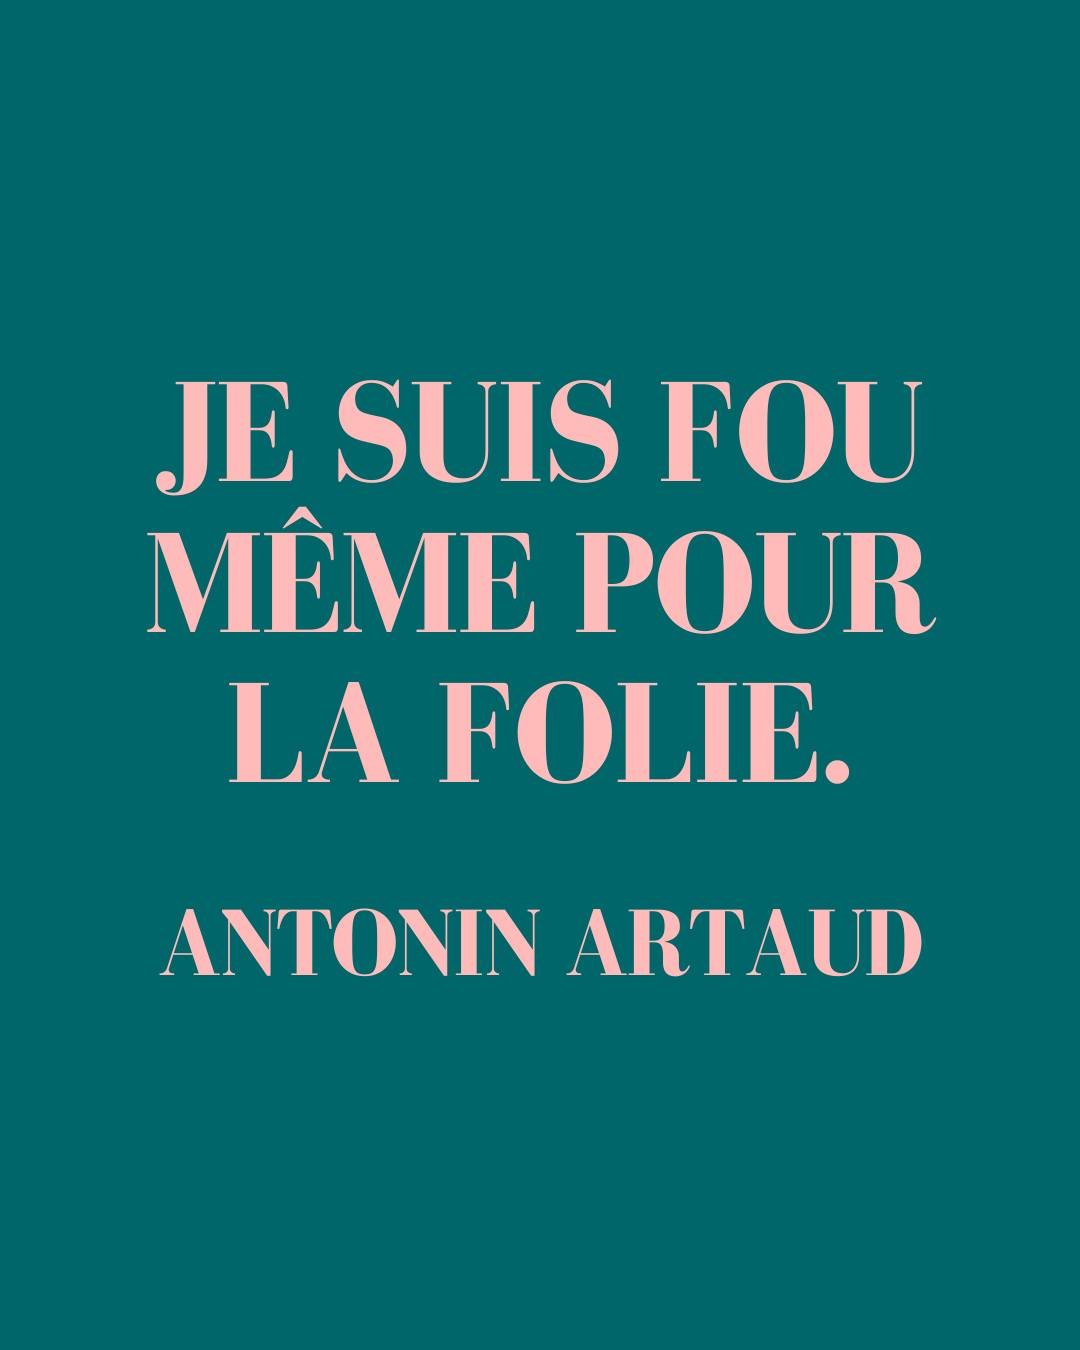 ❝ Je suis fou m&ecirc;me pour la folie. ❞ Antonin Artaud

🎭Cette citation est tir&eacute;e de Van Gogh, le suicid&eacute; de la soci&eacute;t&eacute;, un recueil de textes publi&eacute; en 1947 dont l&rsquo;auteur n&rsquo;est autre que l&rsquo;&eacu